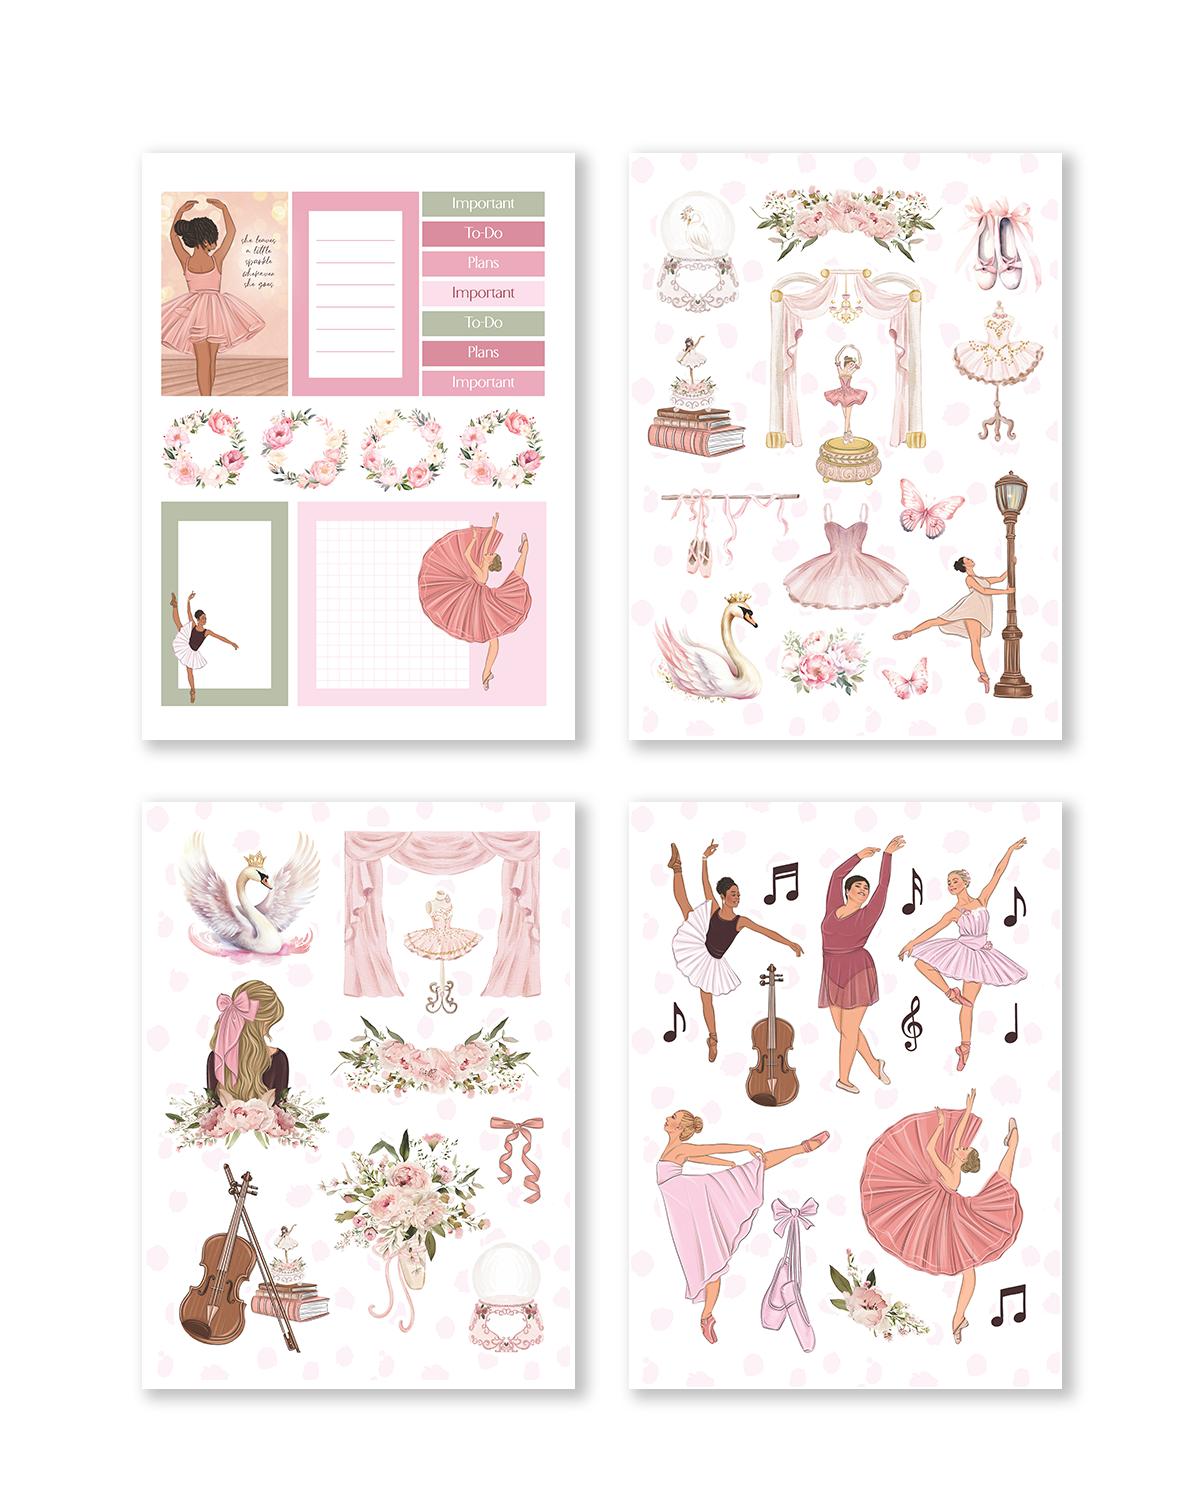 Shop Rongrong Ballerina Digital Sticker Pack 